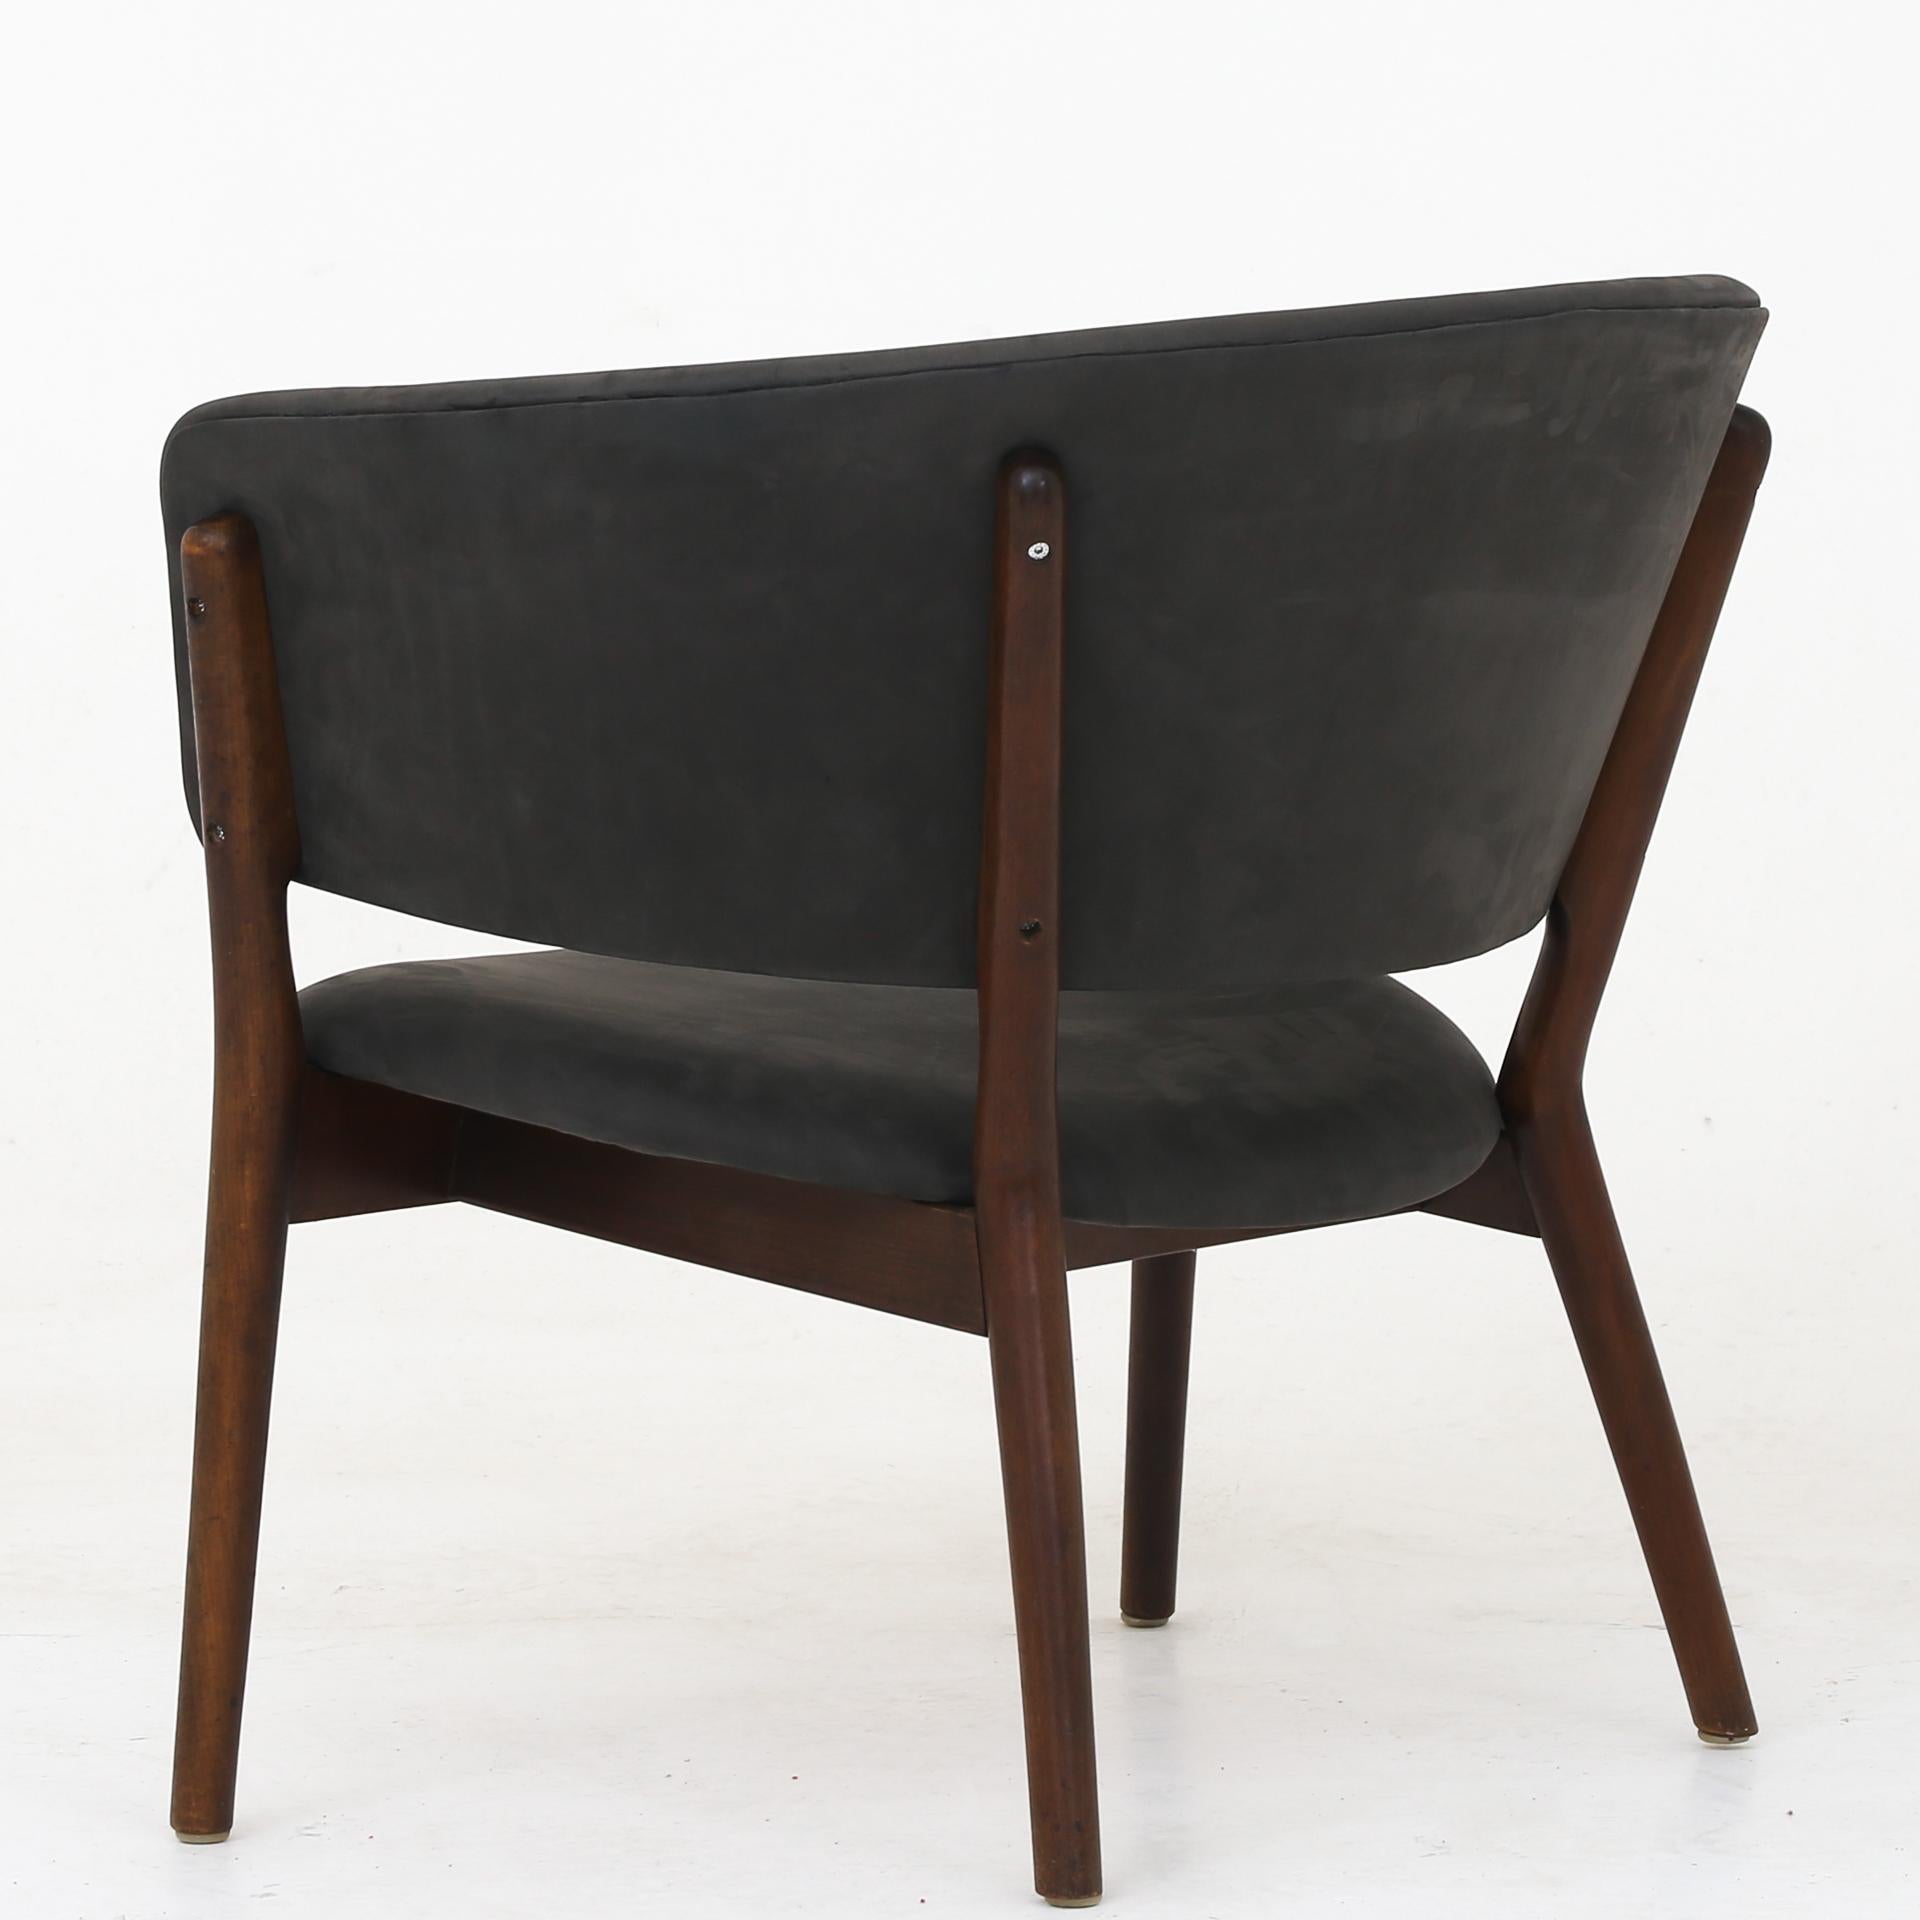 ND 83 - fauteuil en cuir gris Beeche et hêtre teinté. Conçue en 1952. Nanna Ditzel / Søren Willadsen.